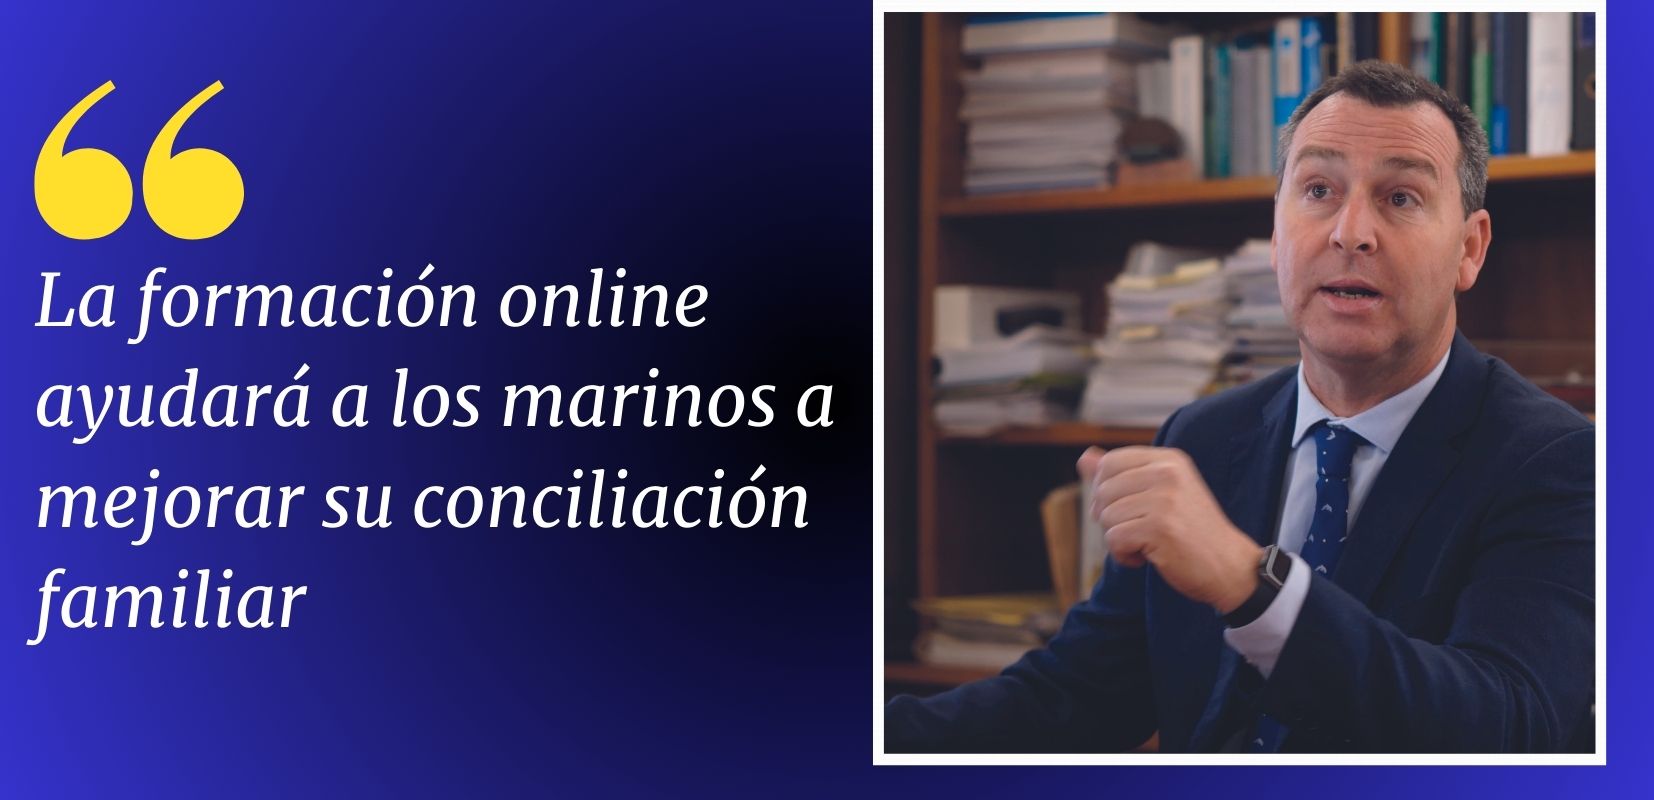 La formación online ayudará a los marinos a mejorar su conciliación familiar